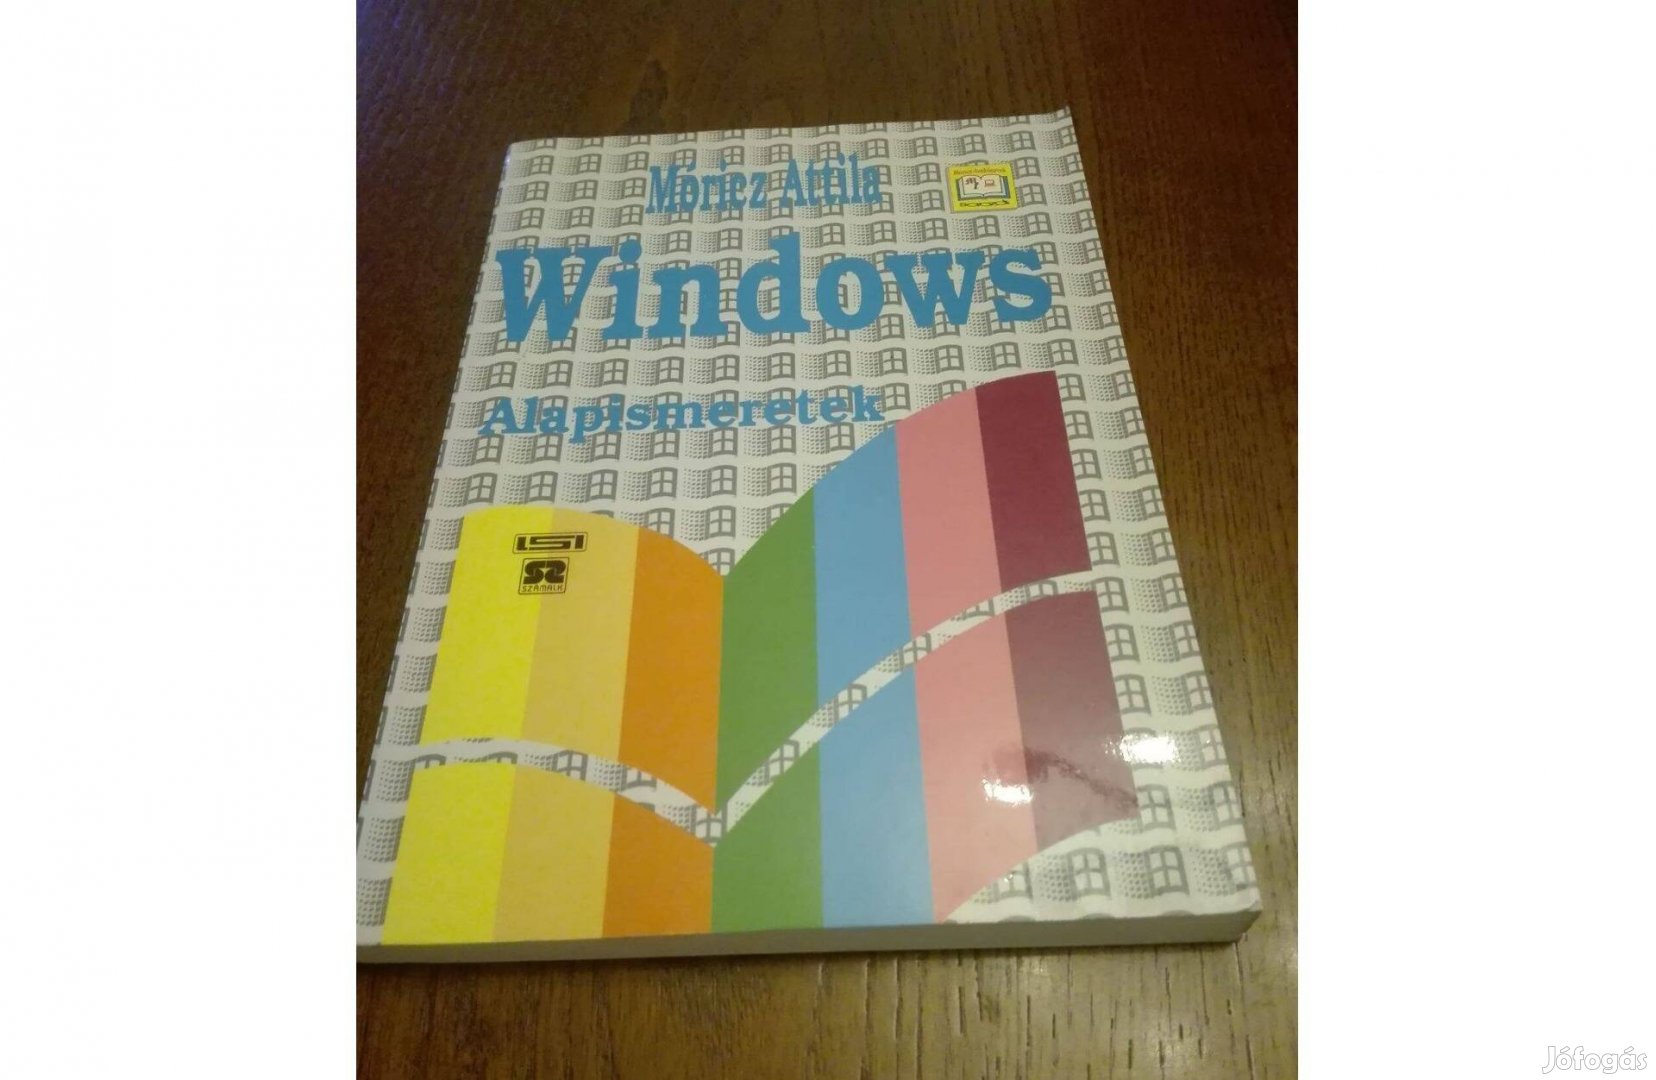 Windows alapismertek könyv, alig használt